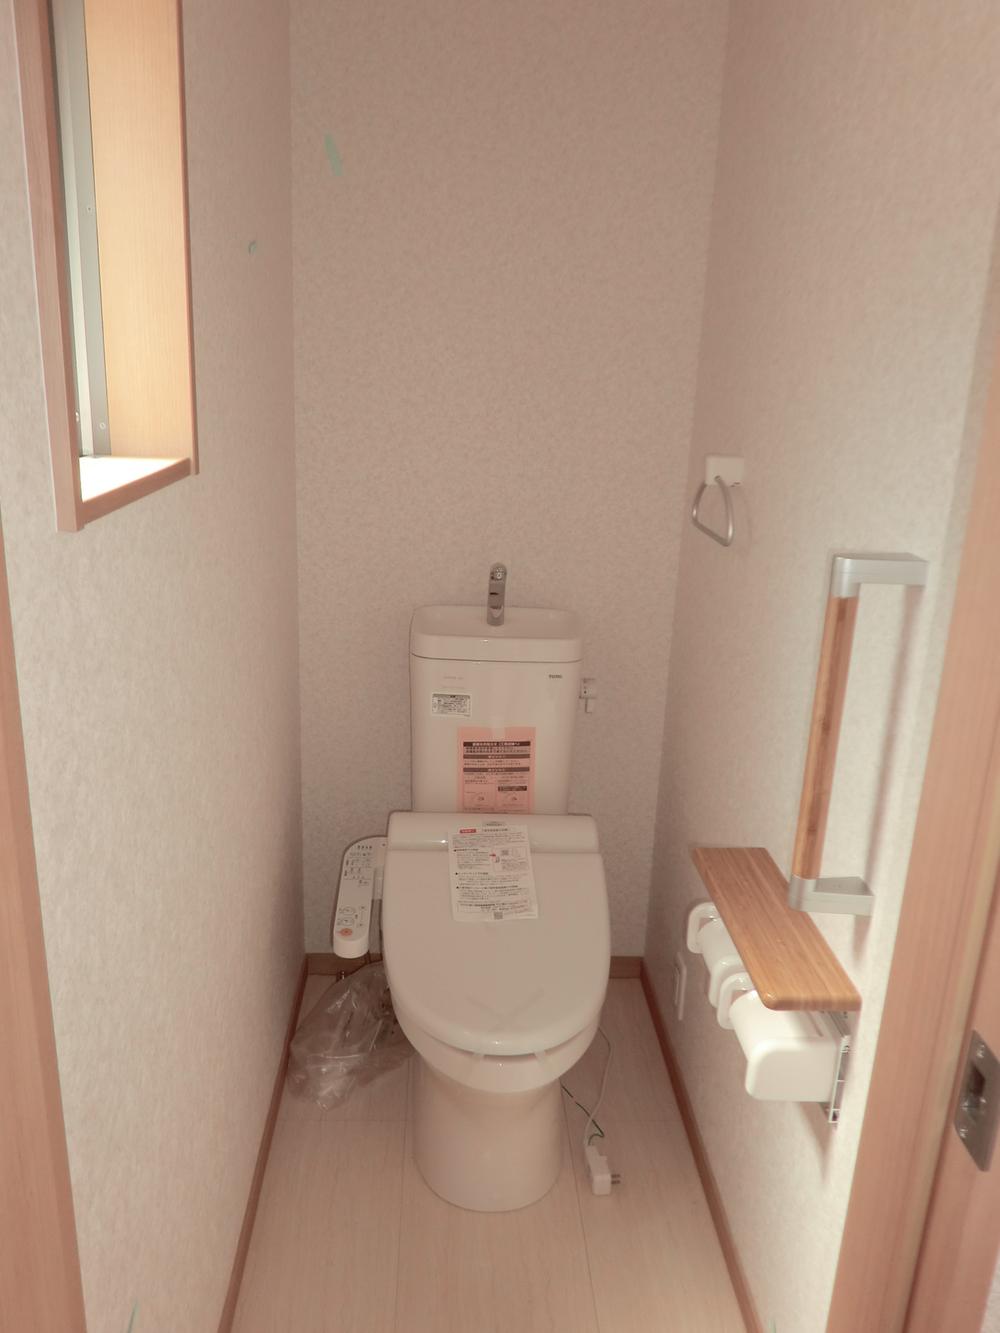 Toilet. Toilet (Washlet heating toilet seat)